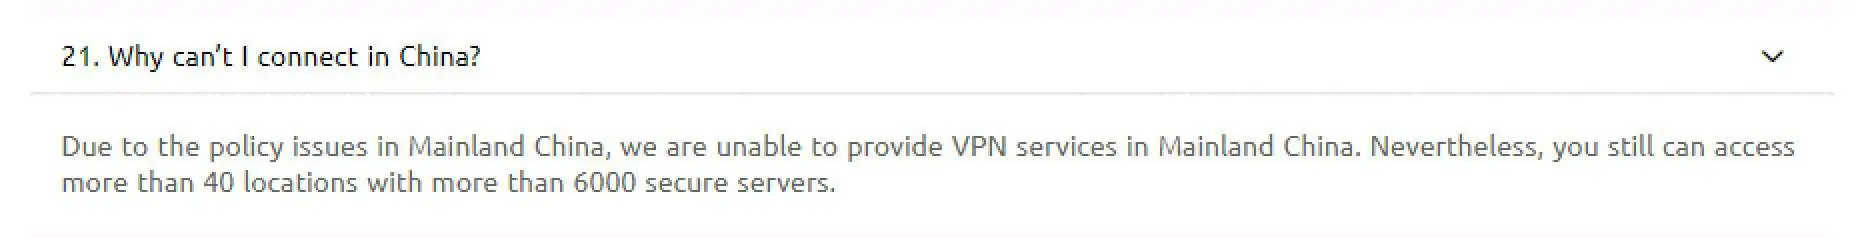 VPN Proxy Master - China FAQ